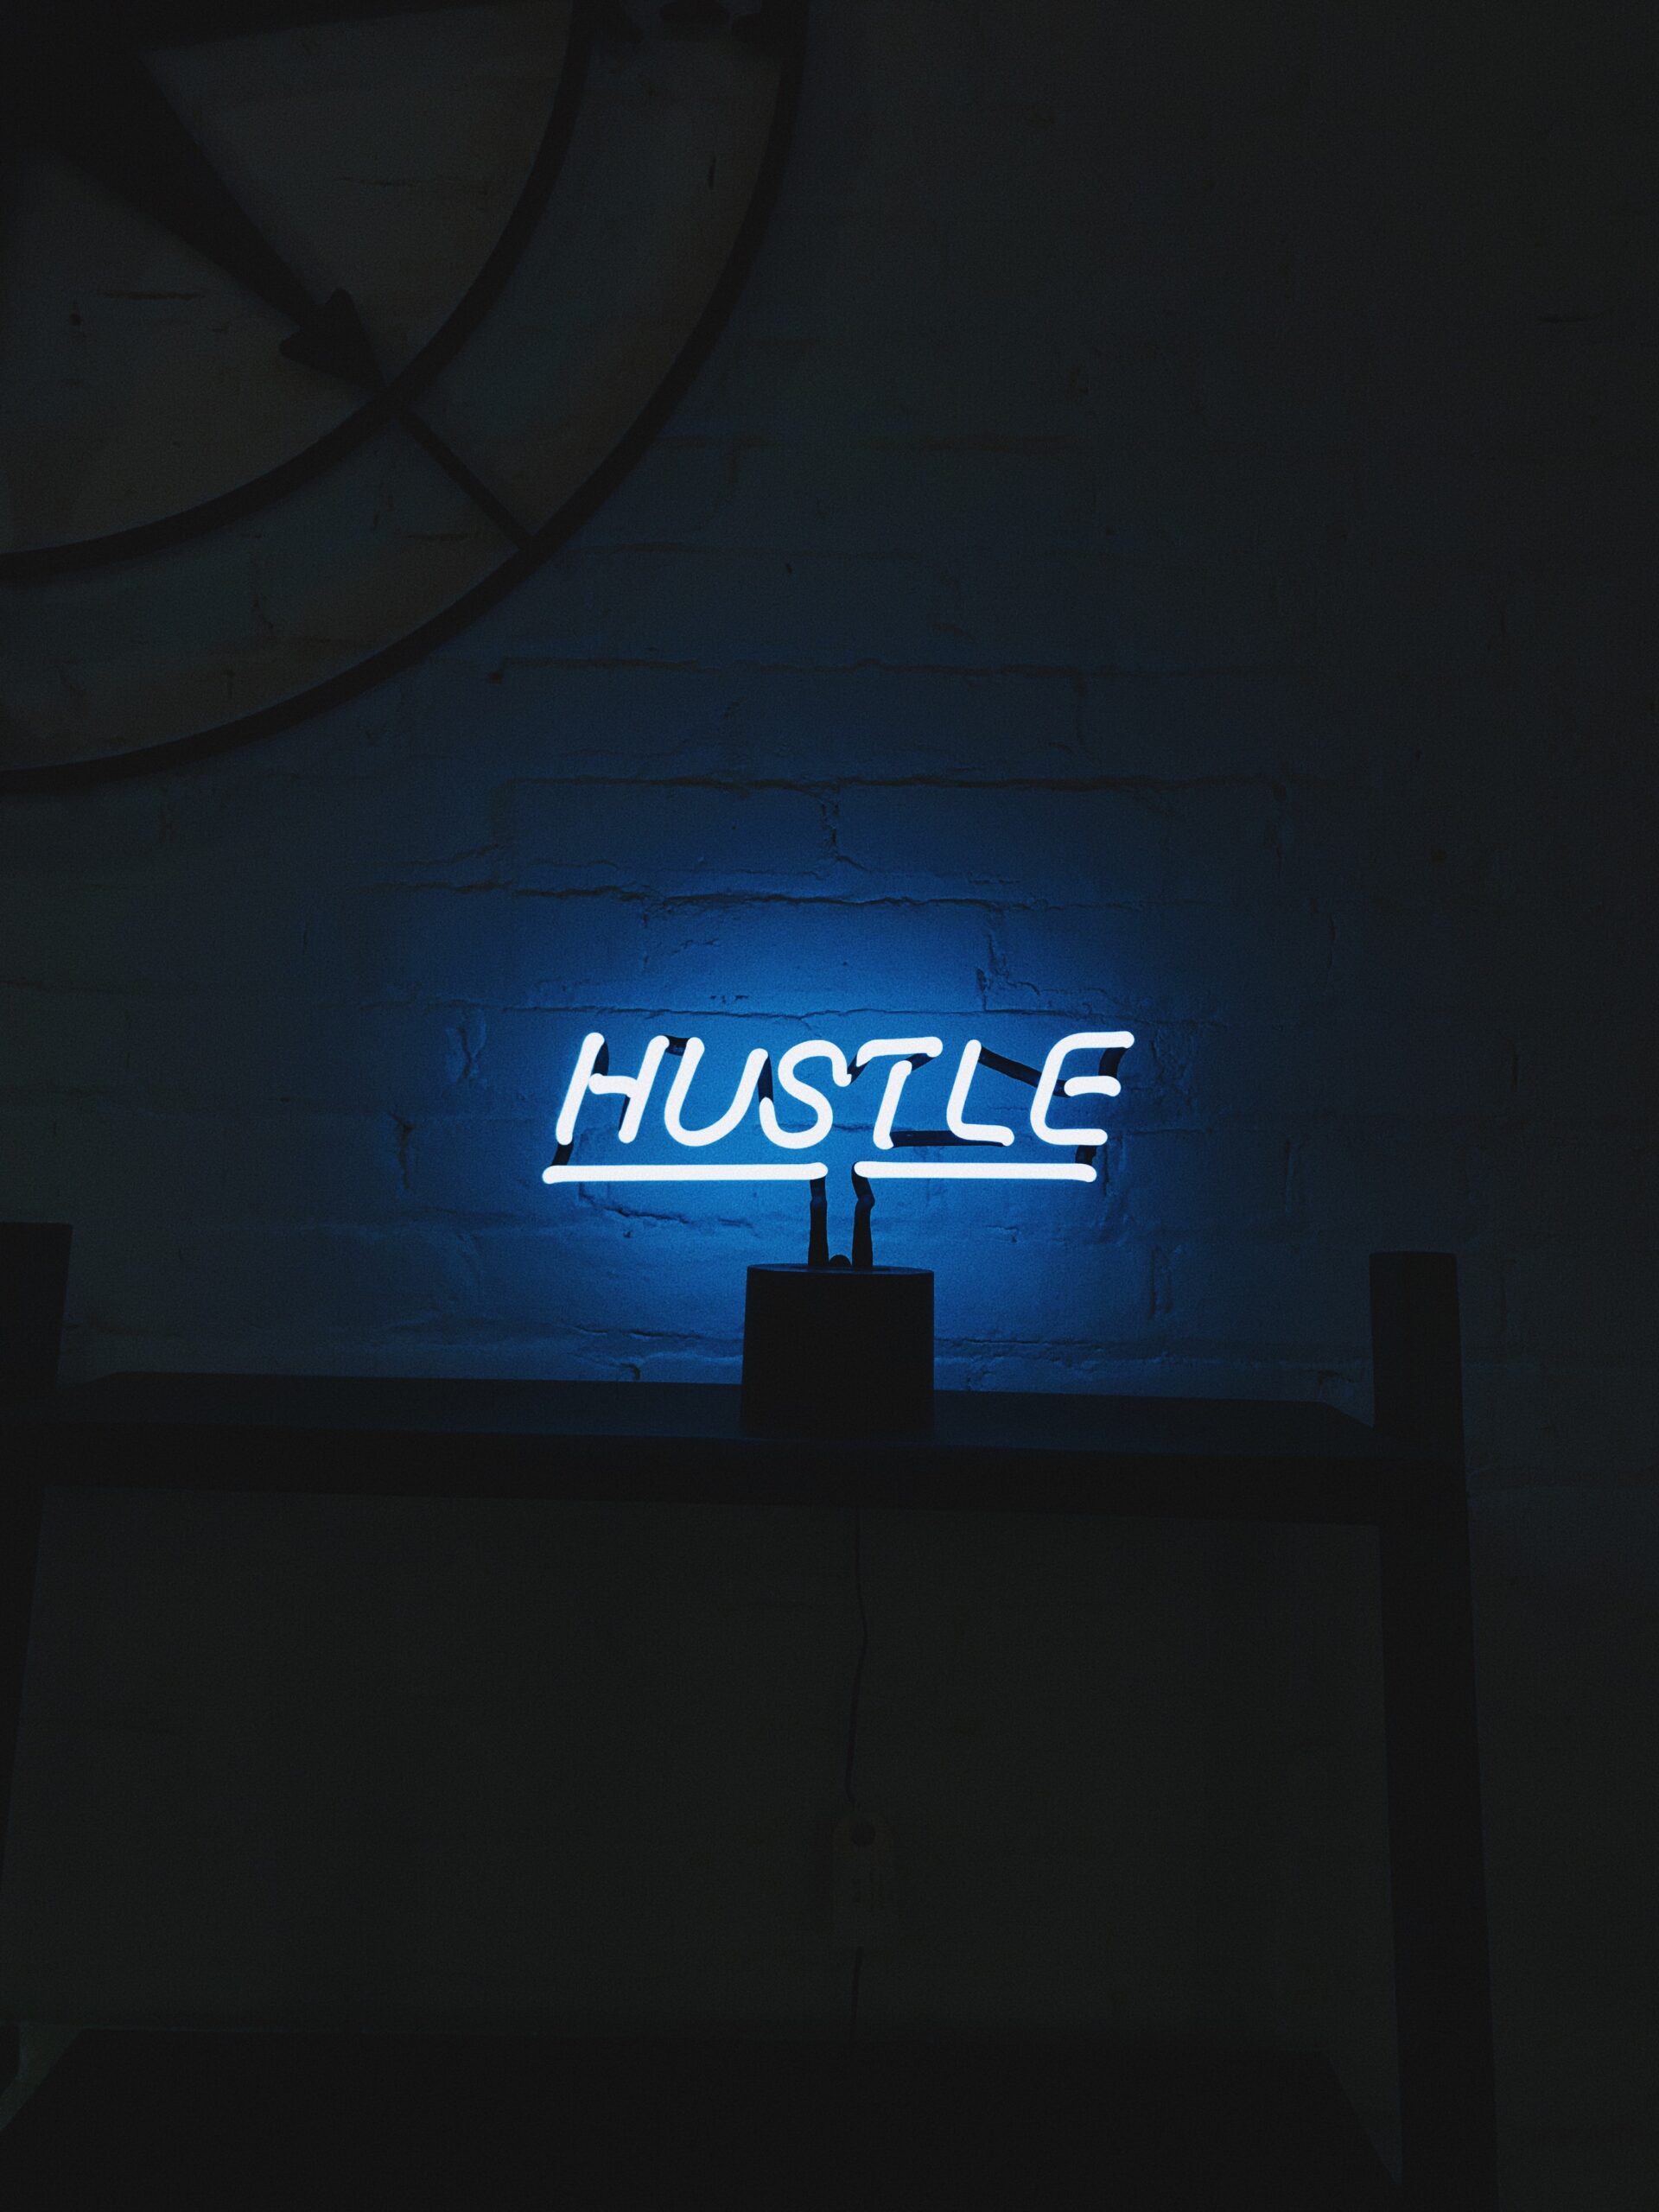 Hustle LED light